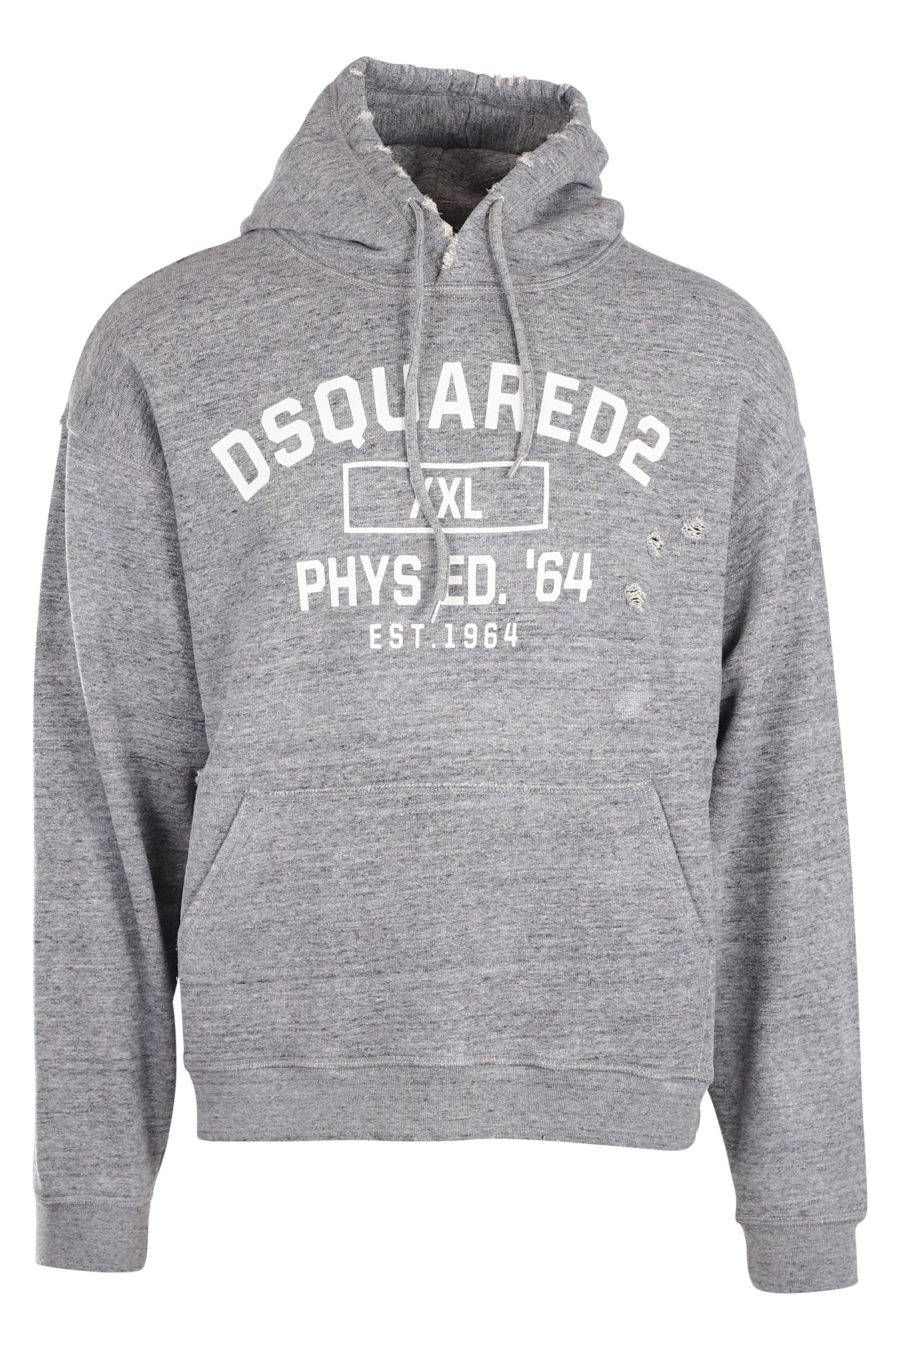 Sudadera gris con capucha y logo "phys ed 64" blanco - IMG 9953